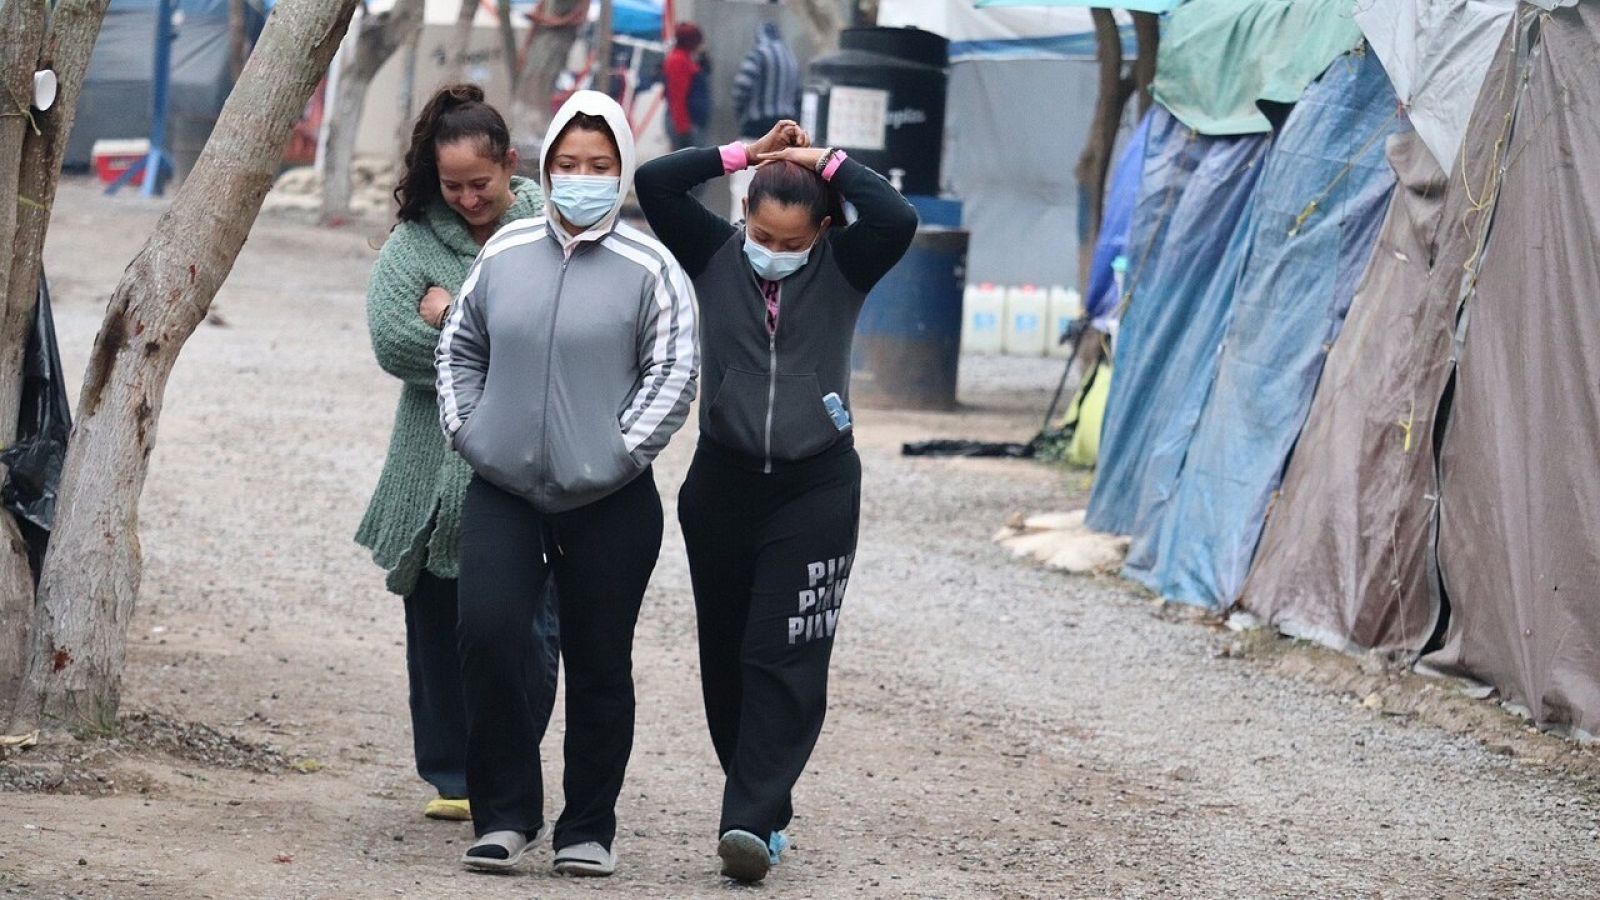 Migrantes en un campamento en México, cerca de la frontera con Estados Unidos, esperan a que se reabran sus casos de asilo